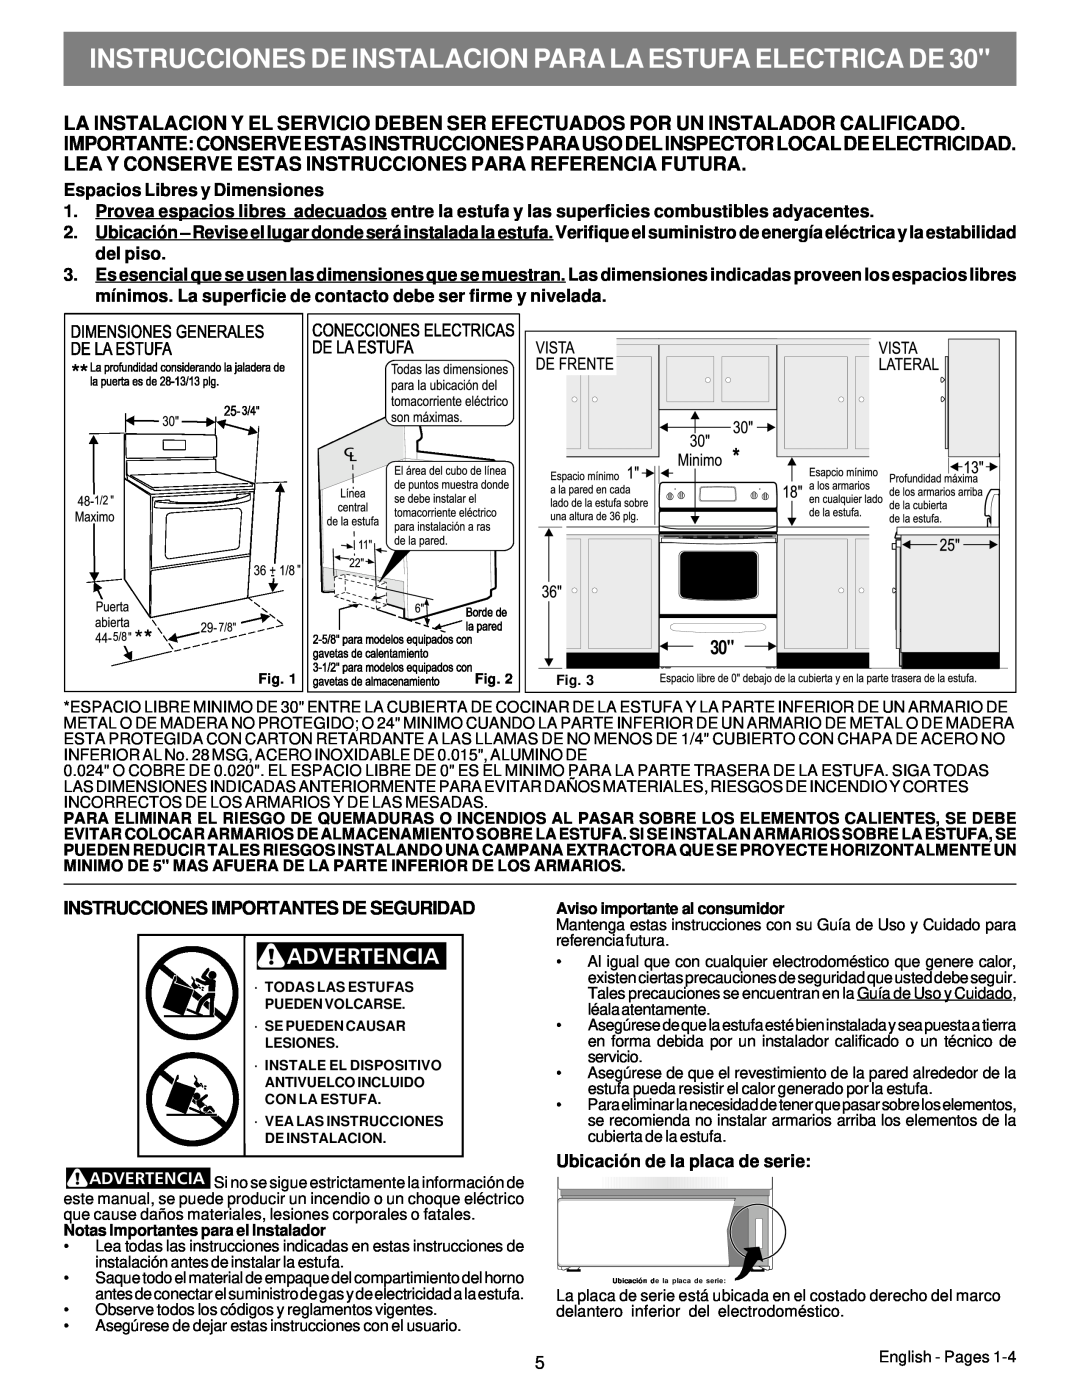 Electrolux 316454909 Instrucciones De Instalacion Para La Estufa Electrica De, Instrucciones Importantes De Seguridad 